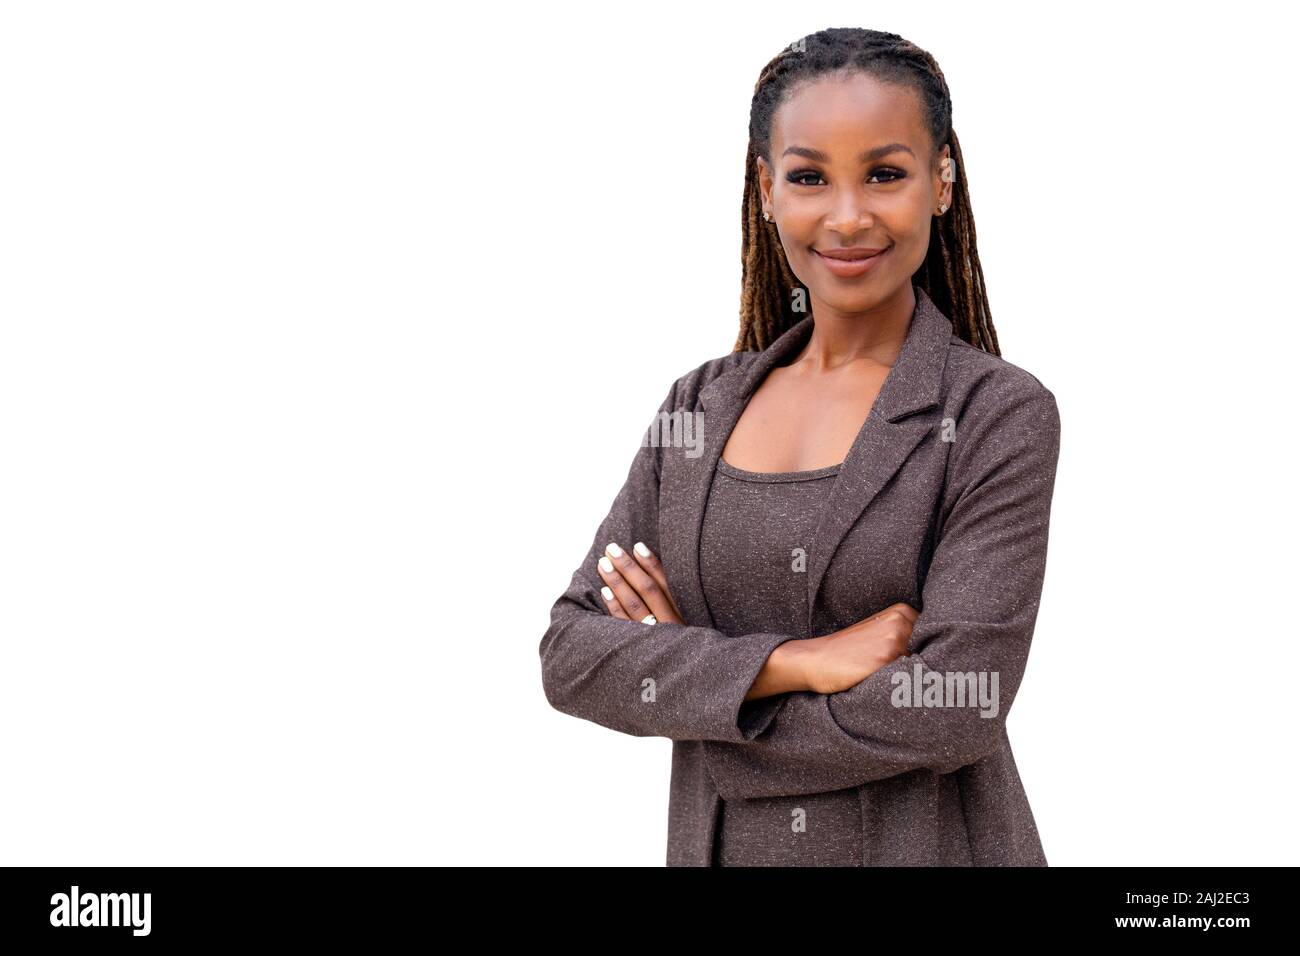 Bellissima femmina african american business woman CEO in una tuta, isolato su sfondo bianco, tranquillamente in piedi con le braccia incrociate Foto Stock